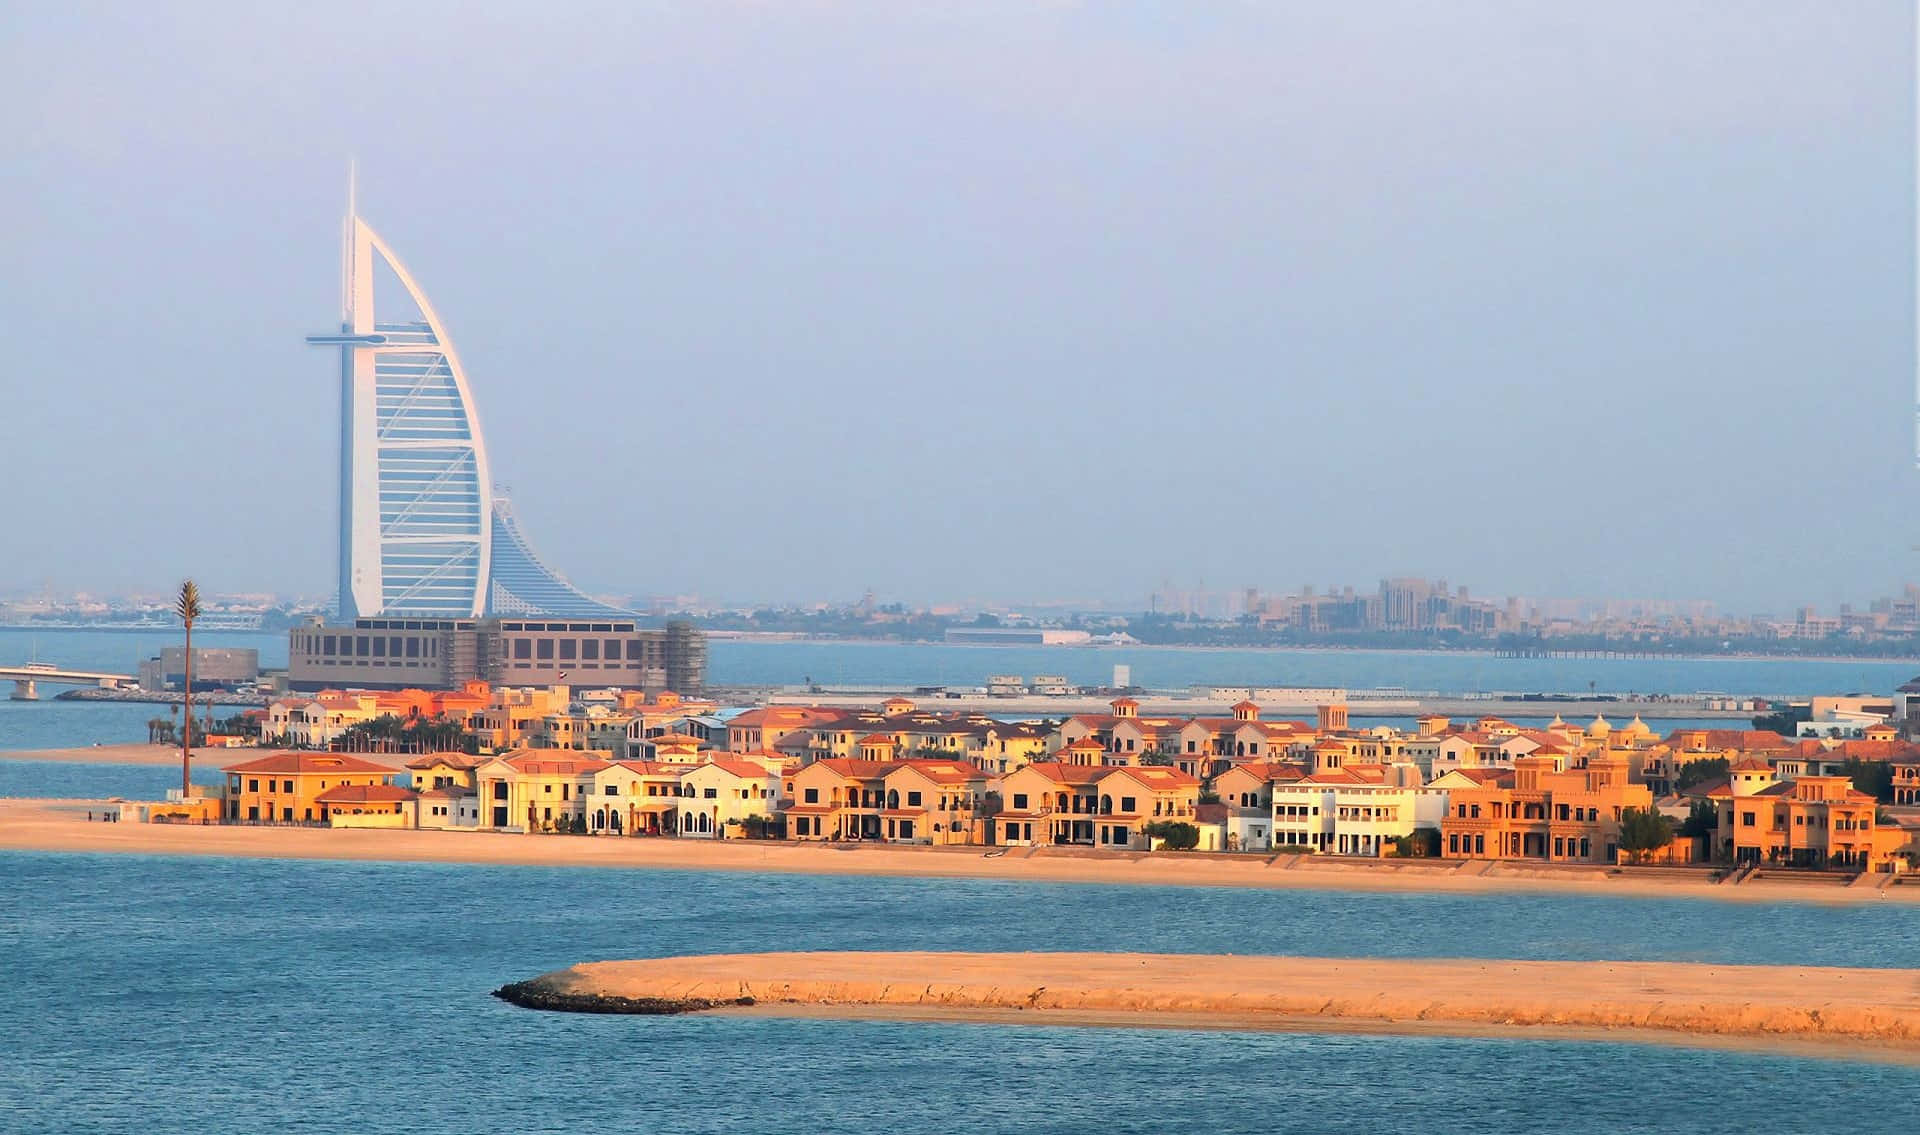 Vistapanoramica Dello Skyline Iconico Di Dubai, Emirati Arabi Uniti.